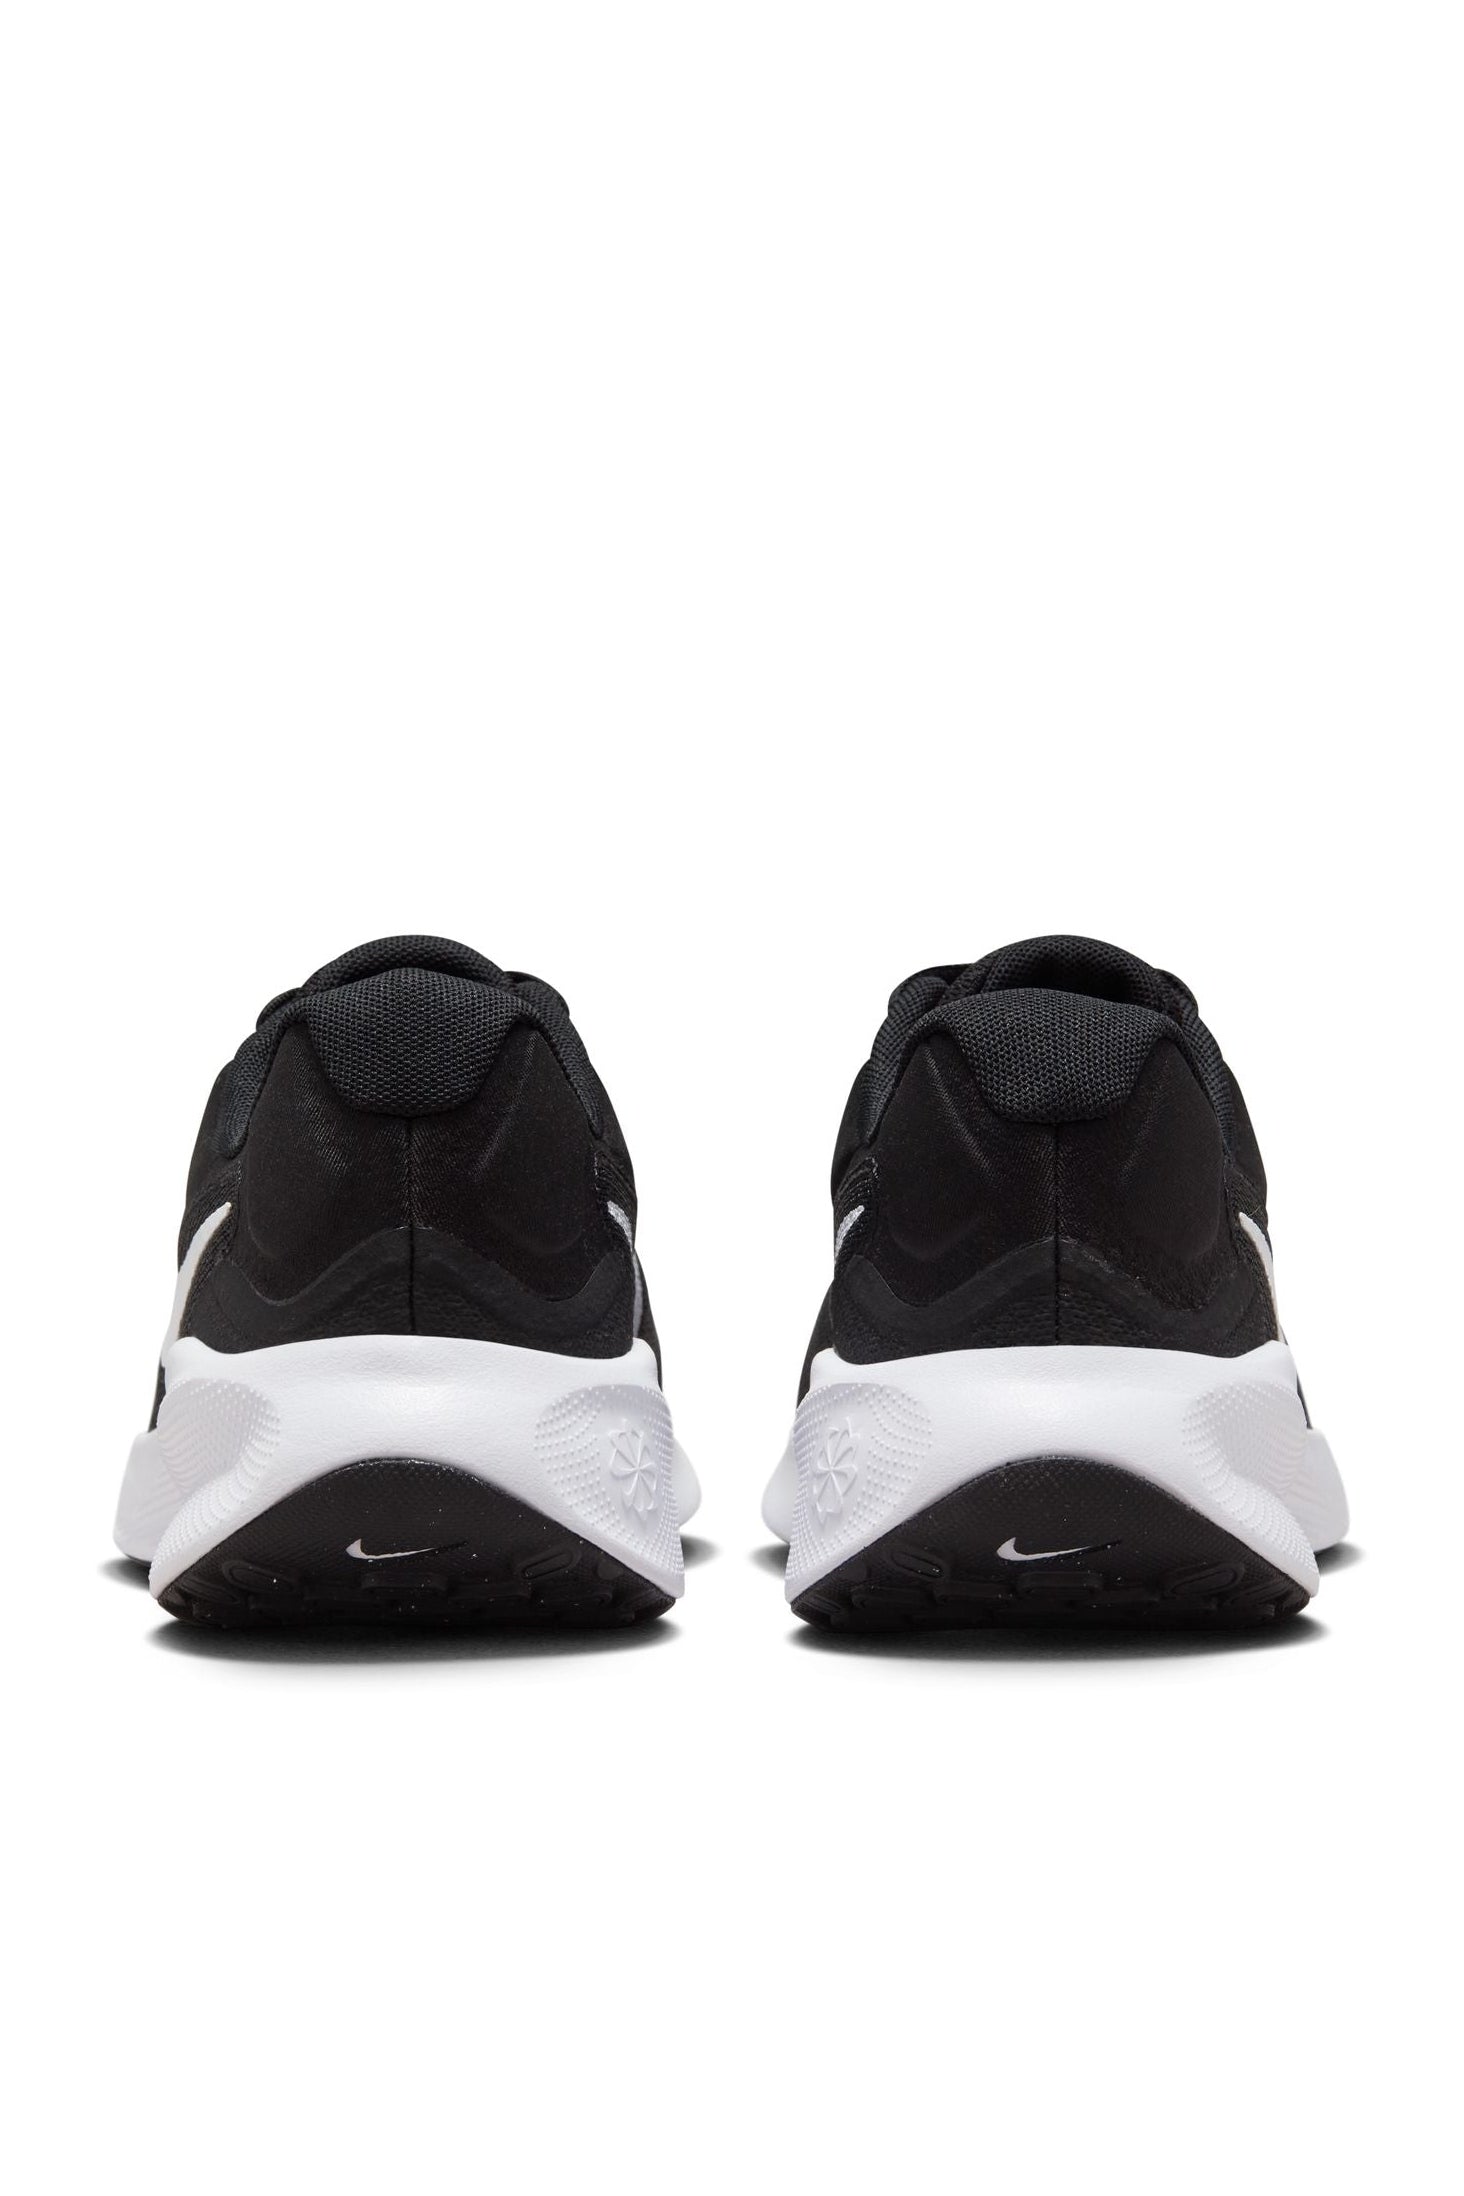 נעלי ספורט לנשים Revolution 7 בצבע שחור ולבן